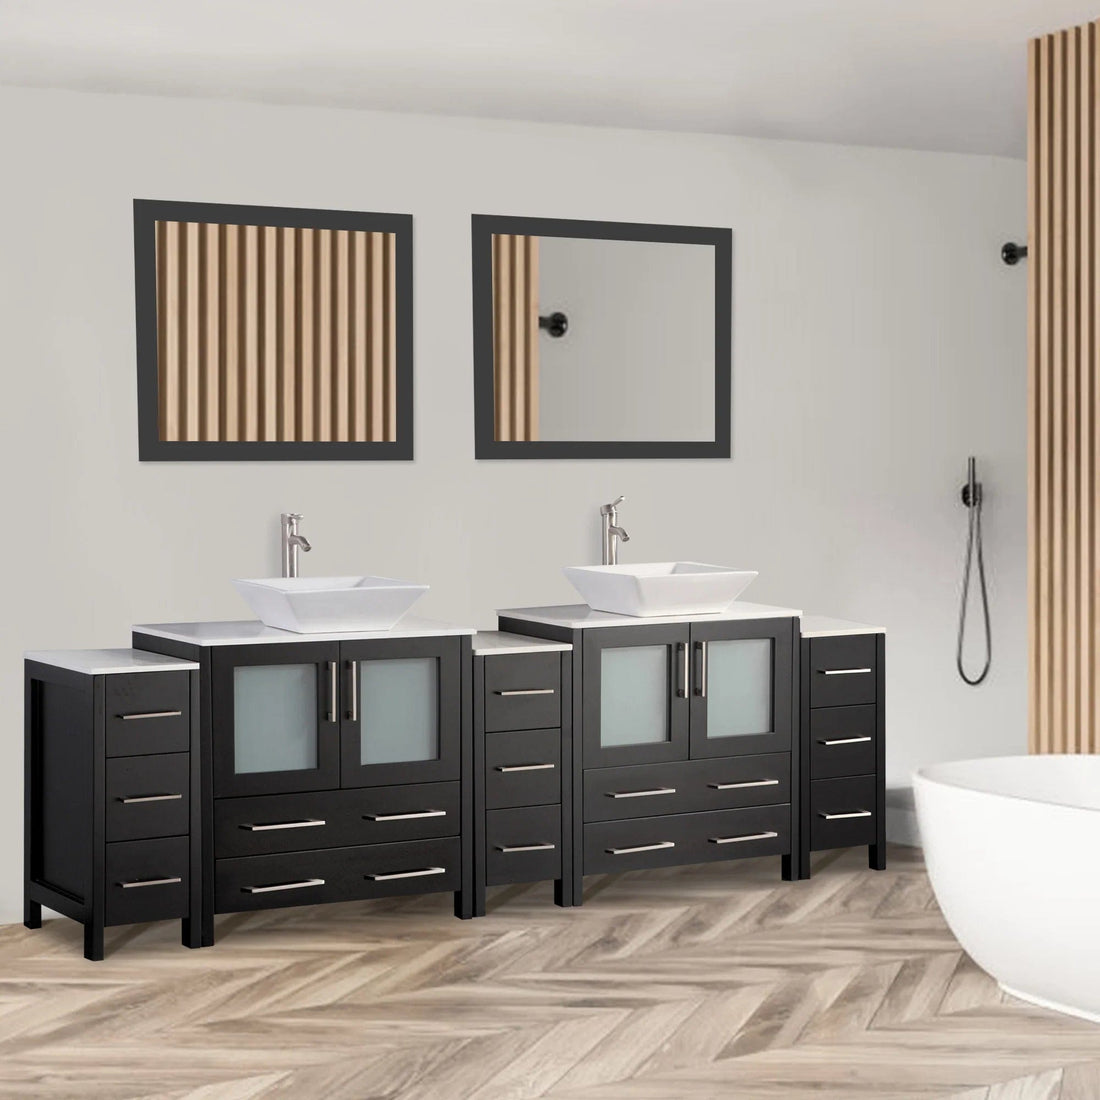 96 in. Double Sink Bathroom Vanity Combo Set in Espresso - Decohub Home